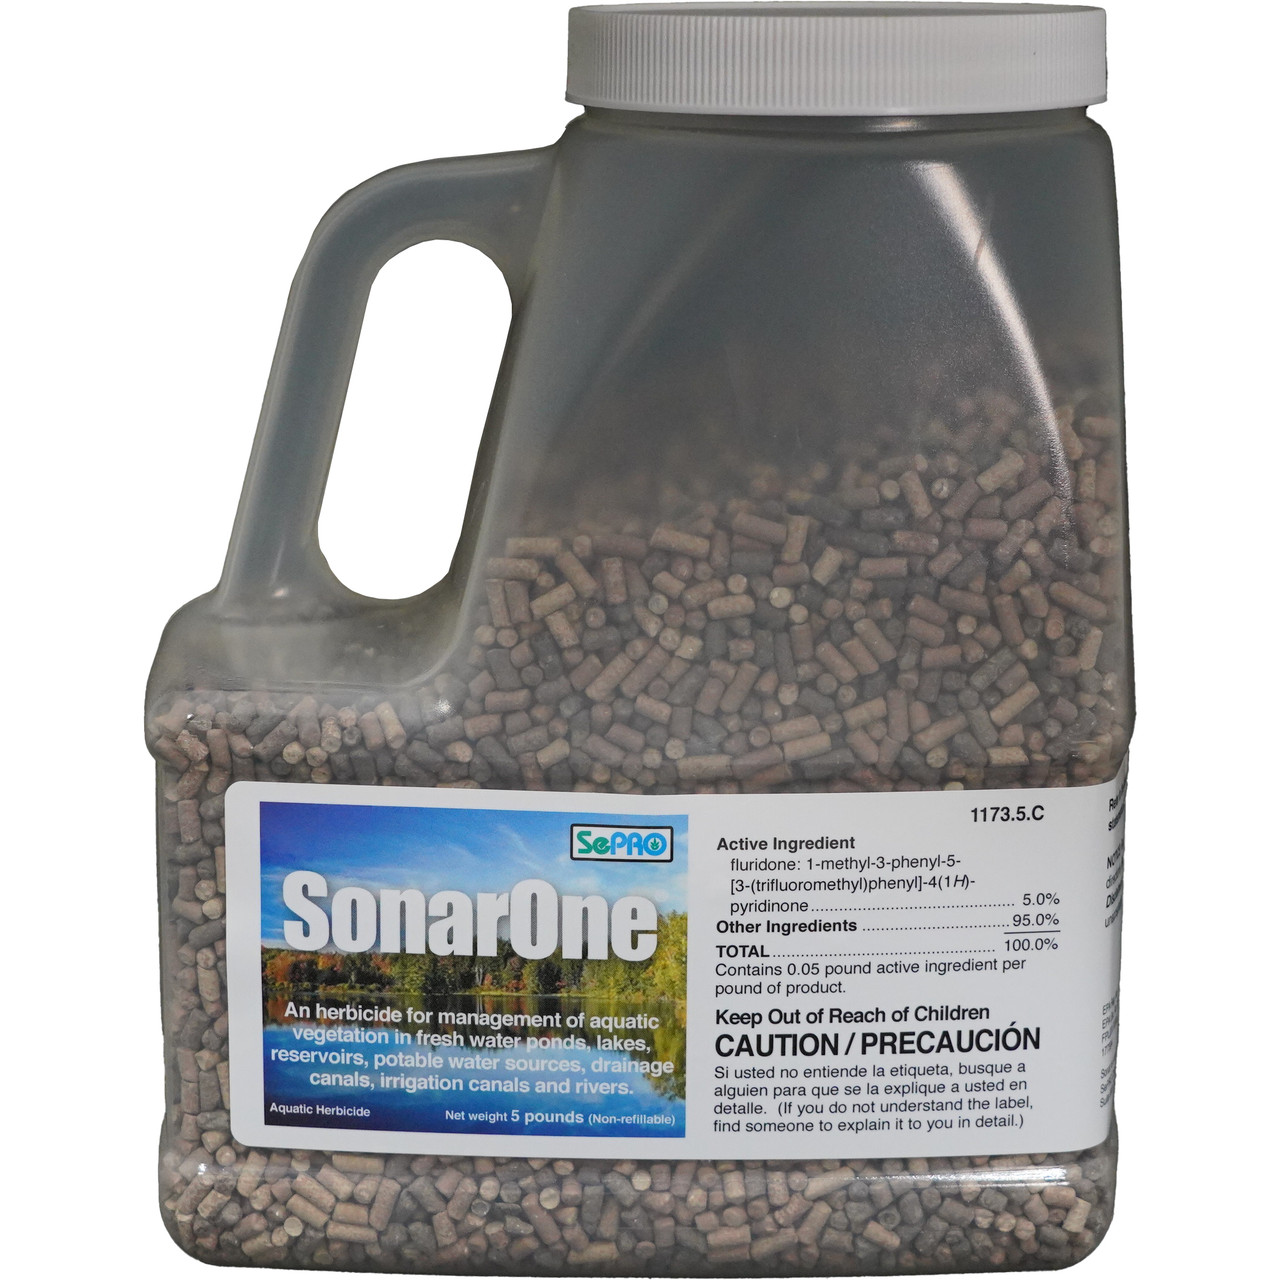 Sonar One Granular Aquatic Herbicide 5 lb - Treats 1/4 acre